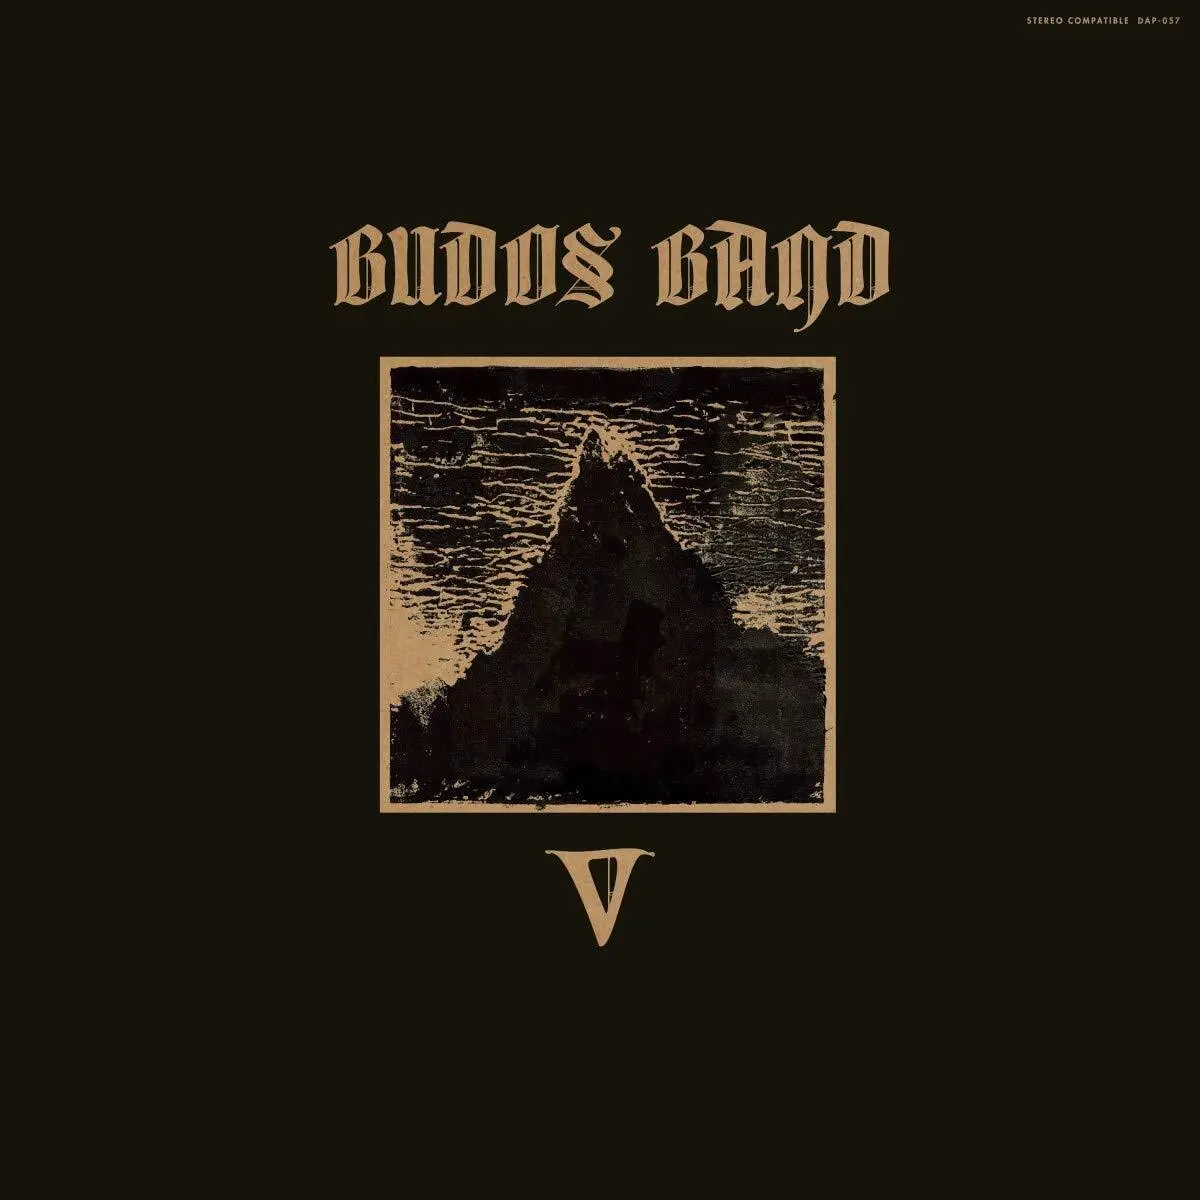 V - The Budos Band